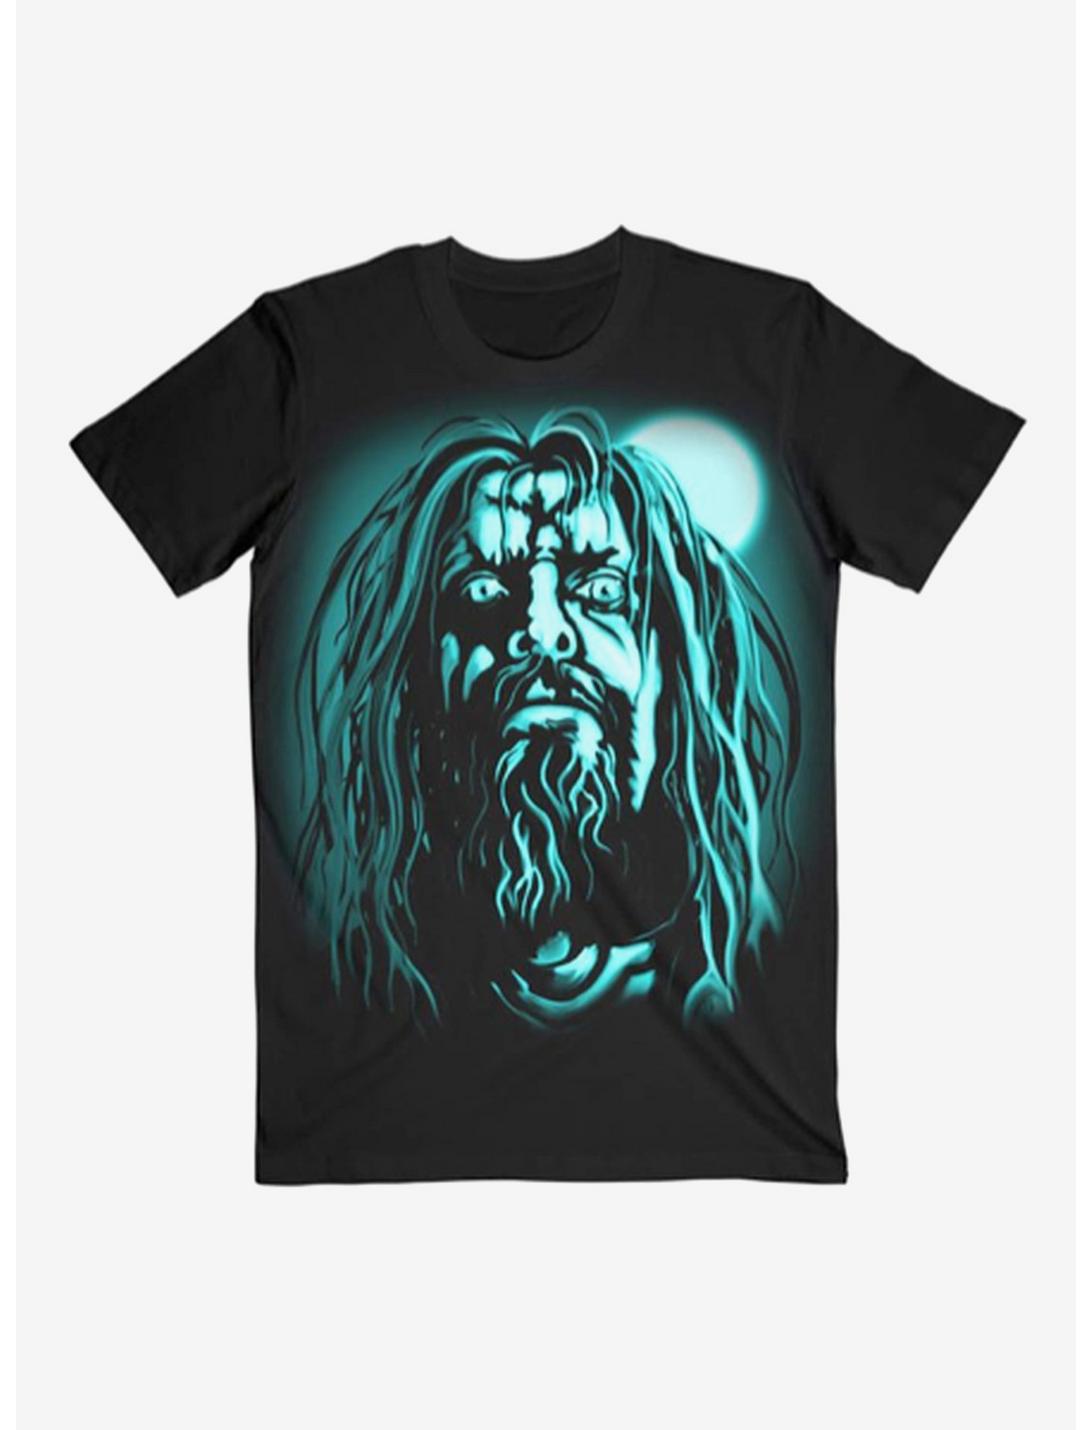 Rob Zombie Moon T-Shirt, BLACK, hi-res